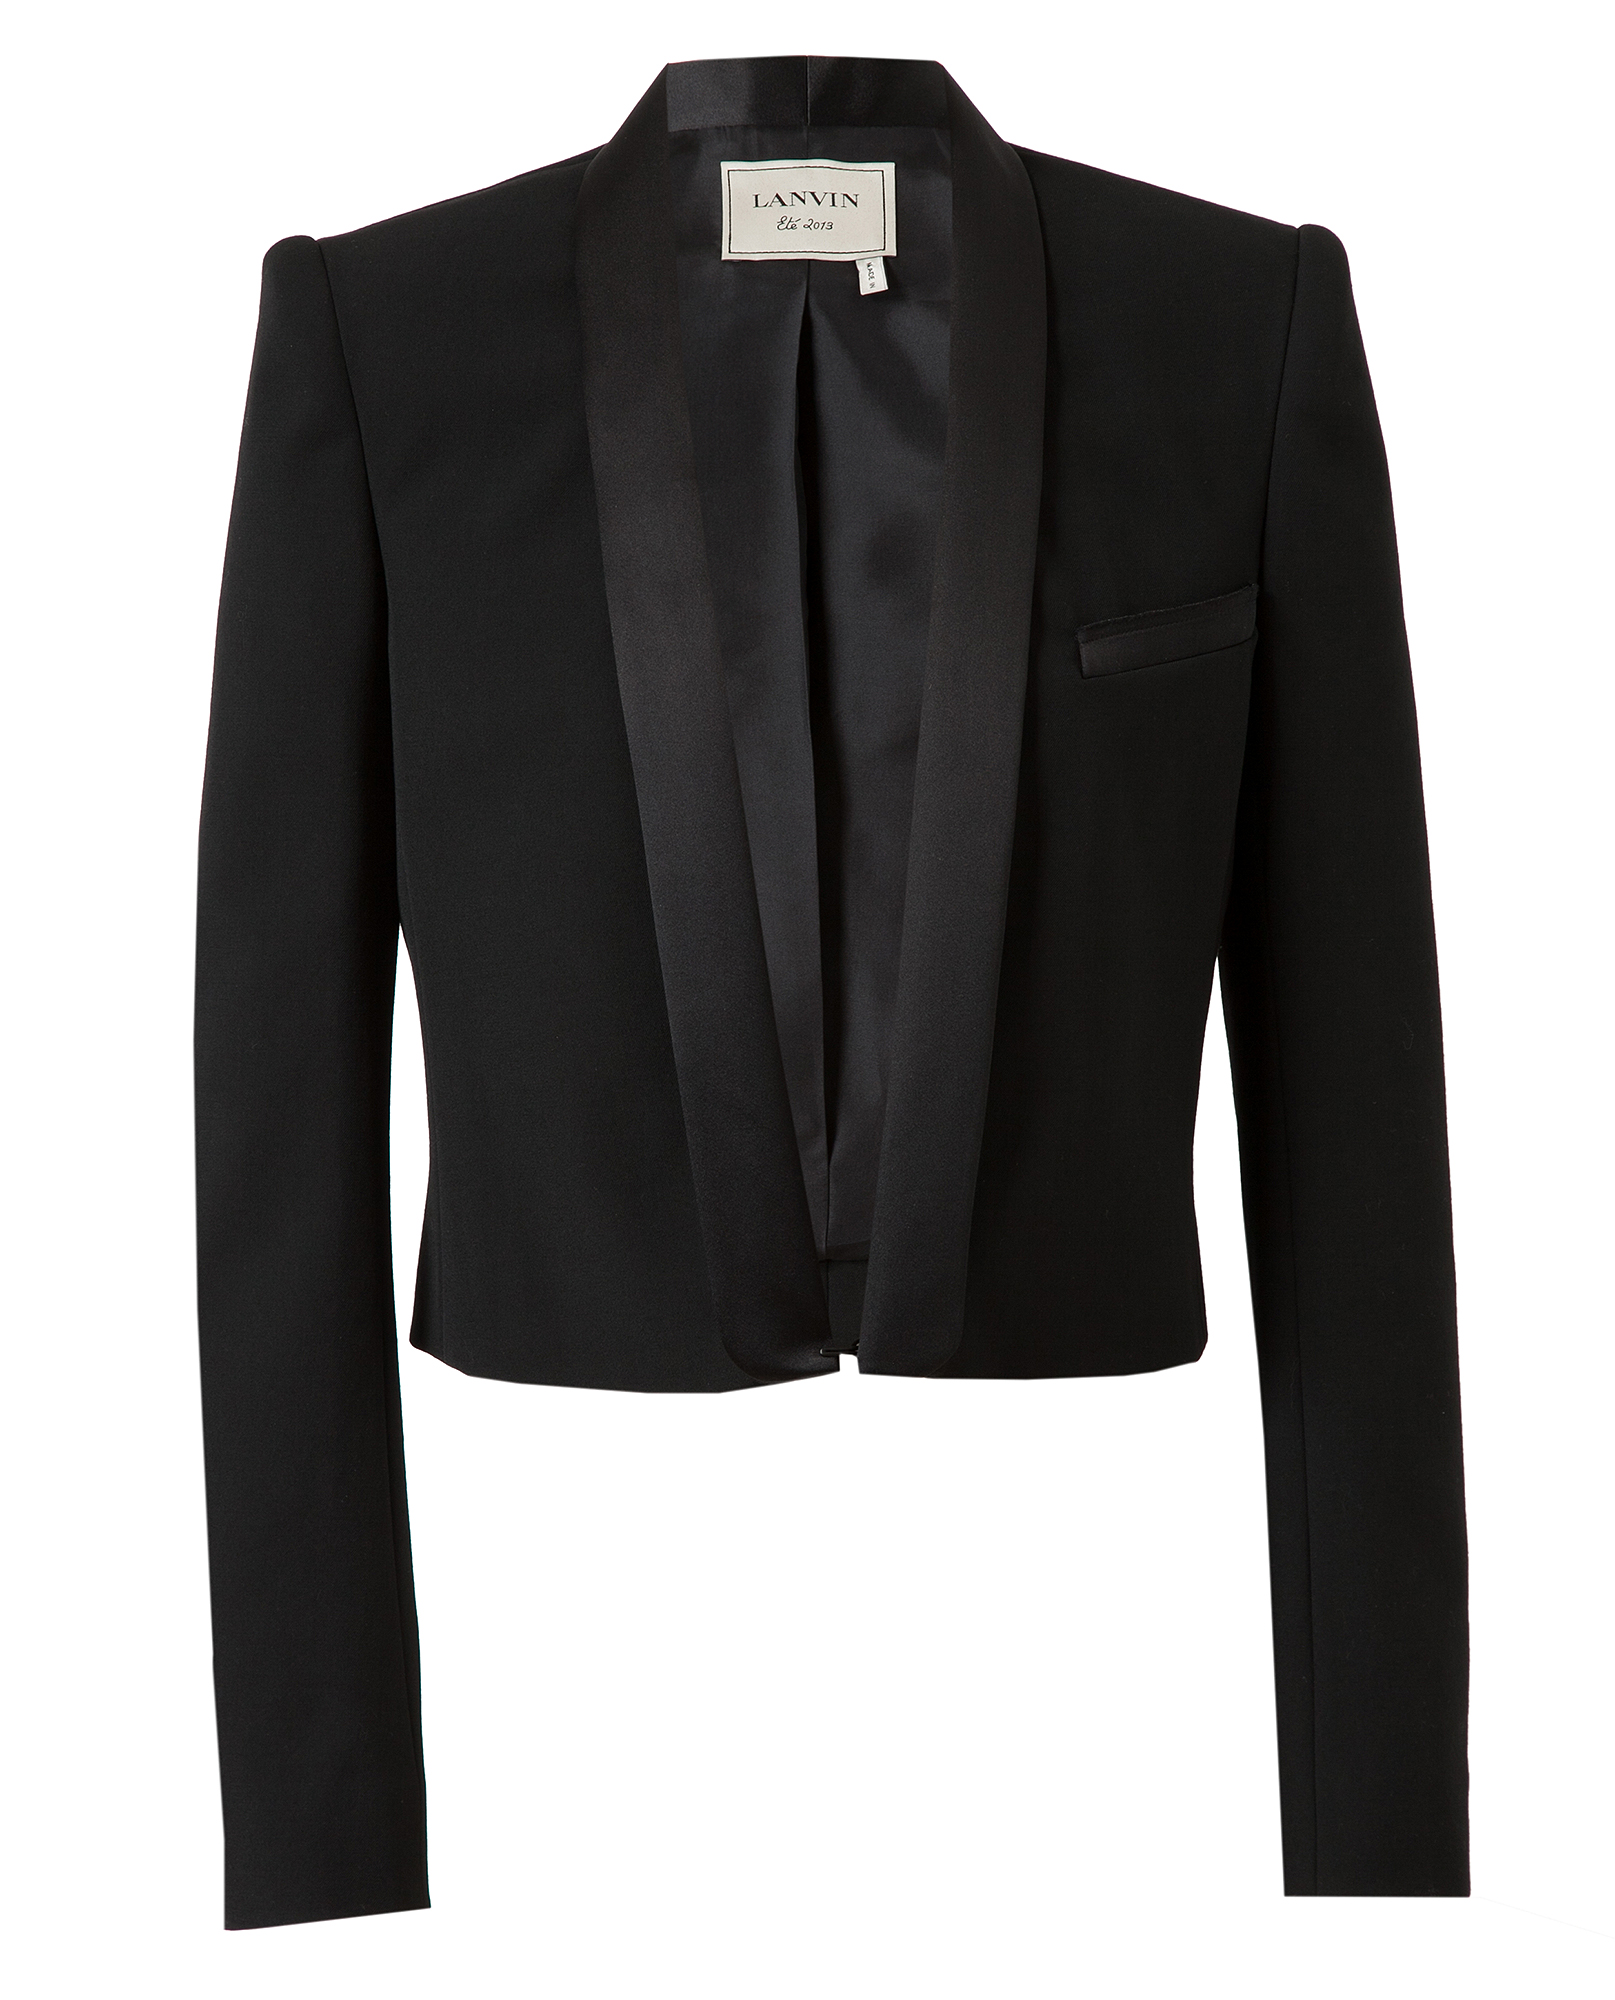 Lanvin Cropped Wool Tuxedo Jacket in Black | Lyst